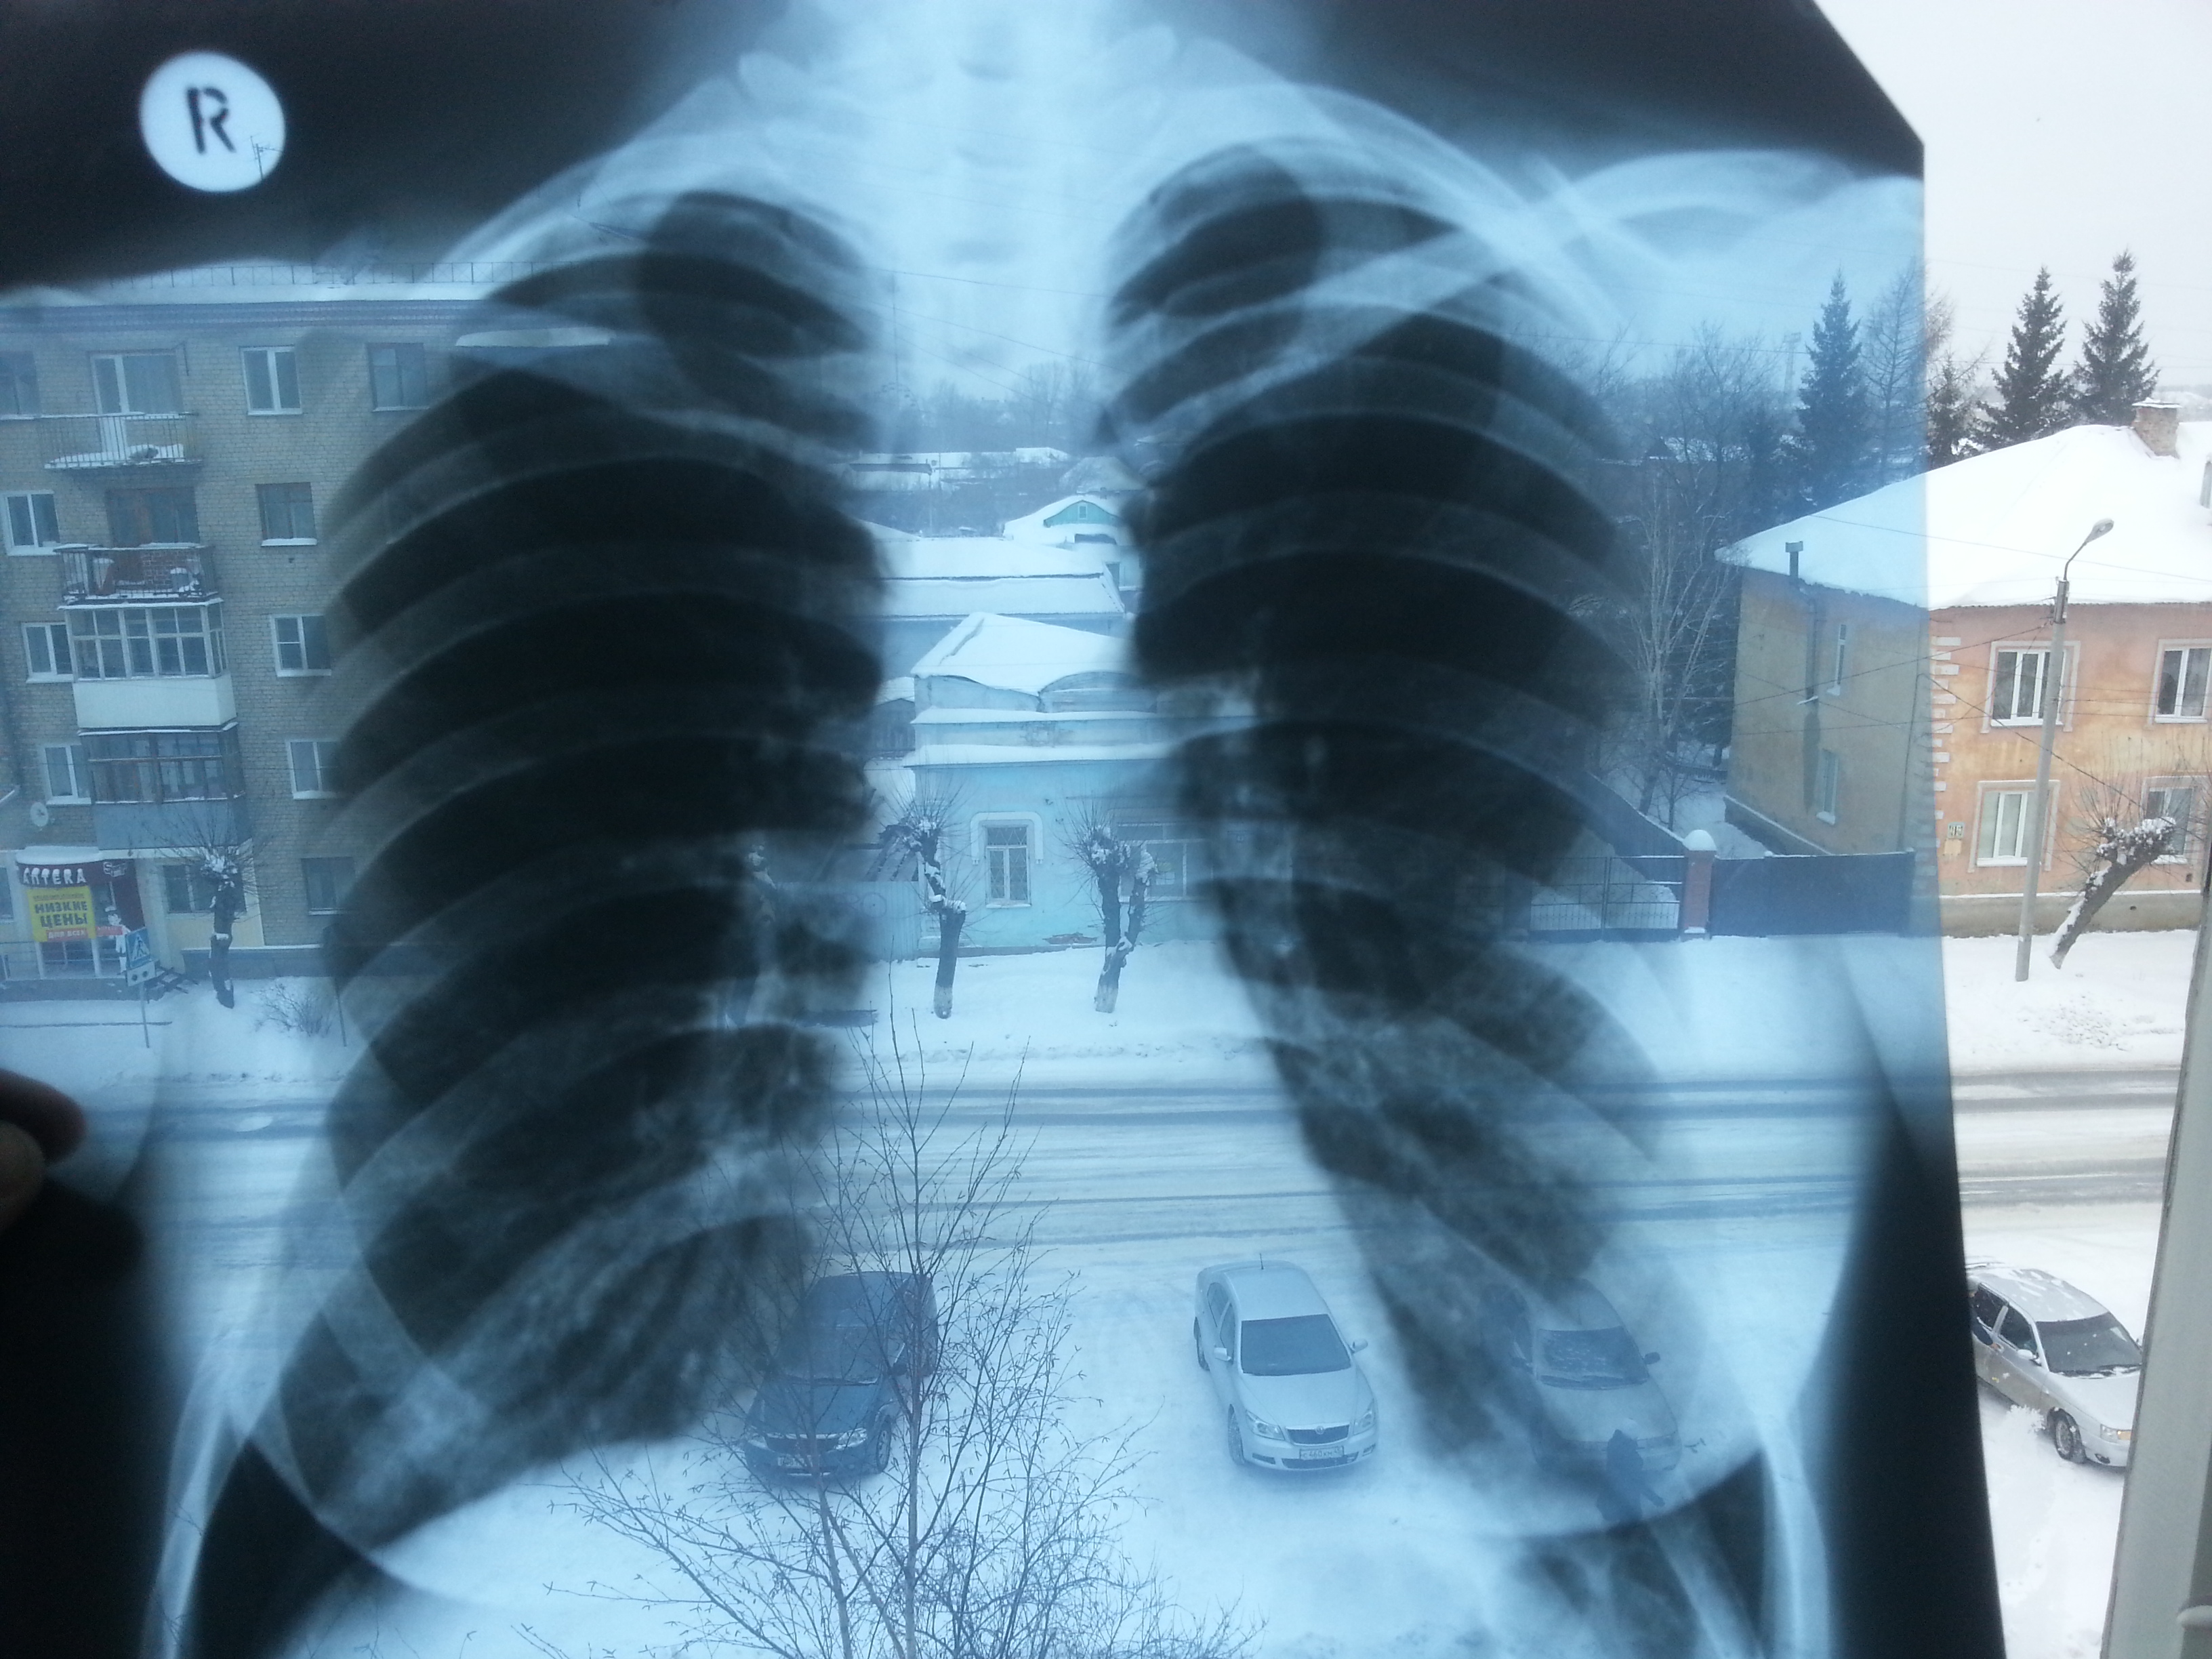 Пневмония на рентгене